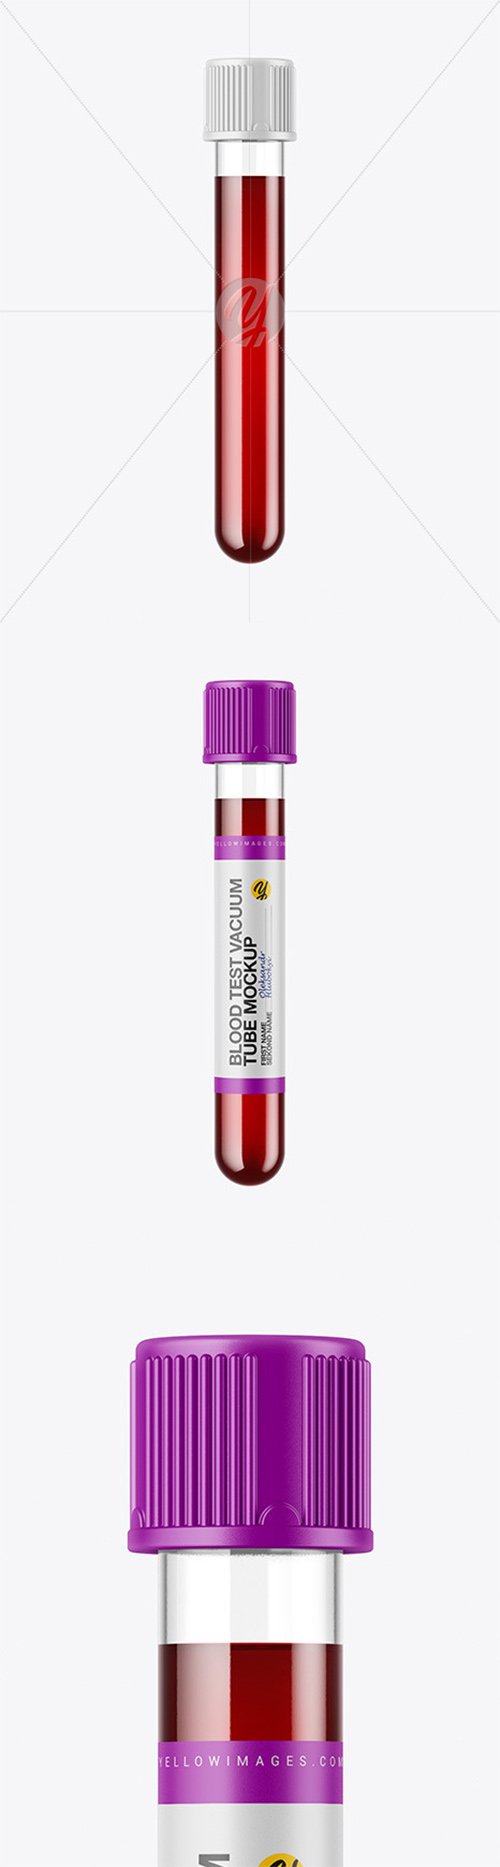 Blood Test Tube Mockup 58191 TIF